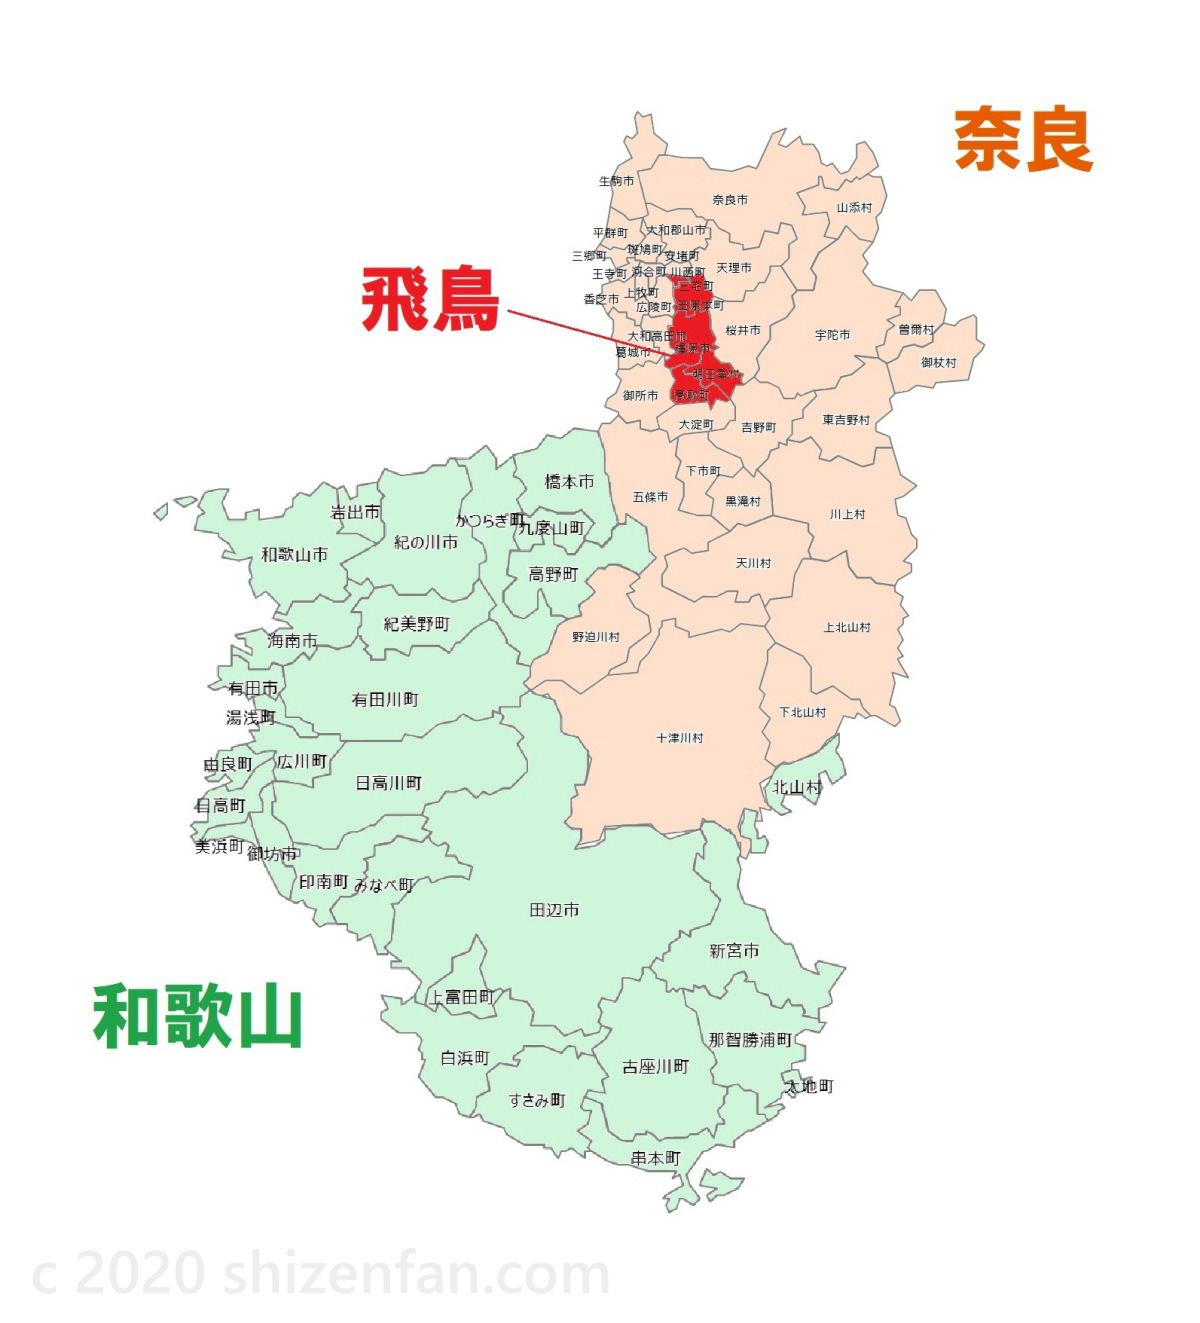 奈良県・和歌山県のナンバープレート地域分け2020